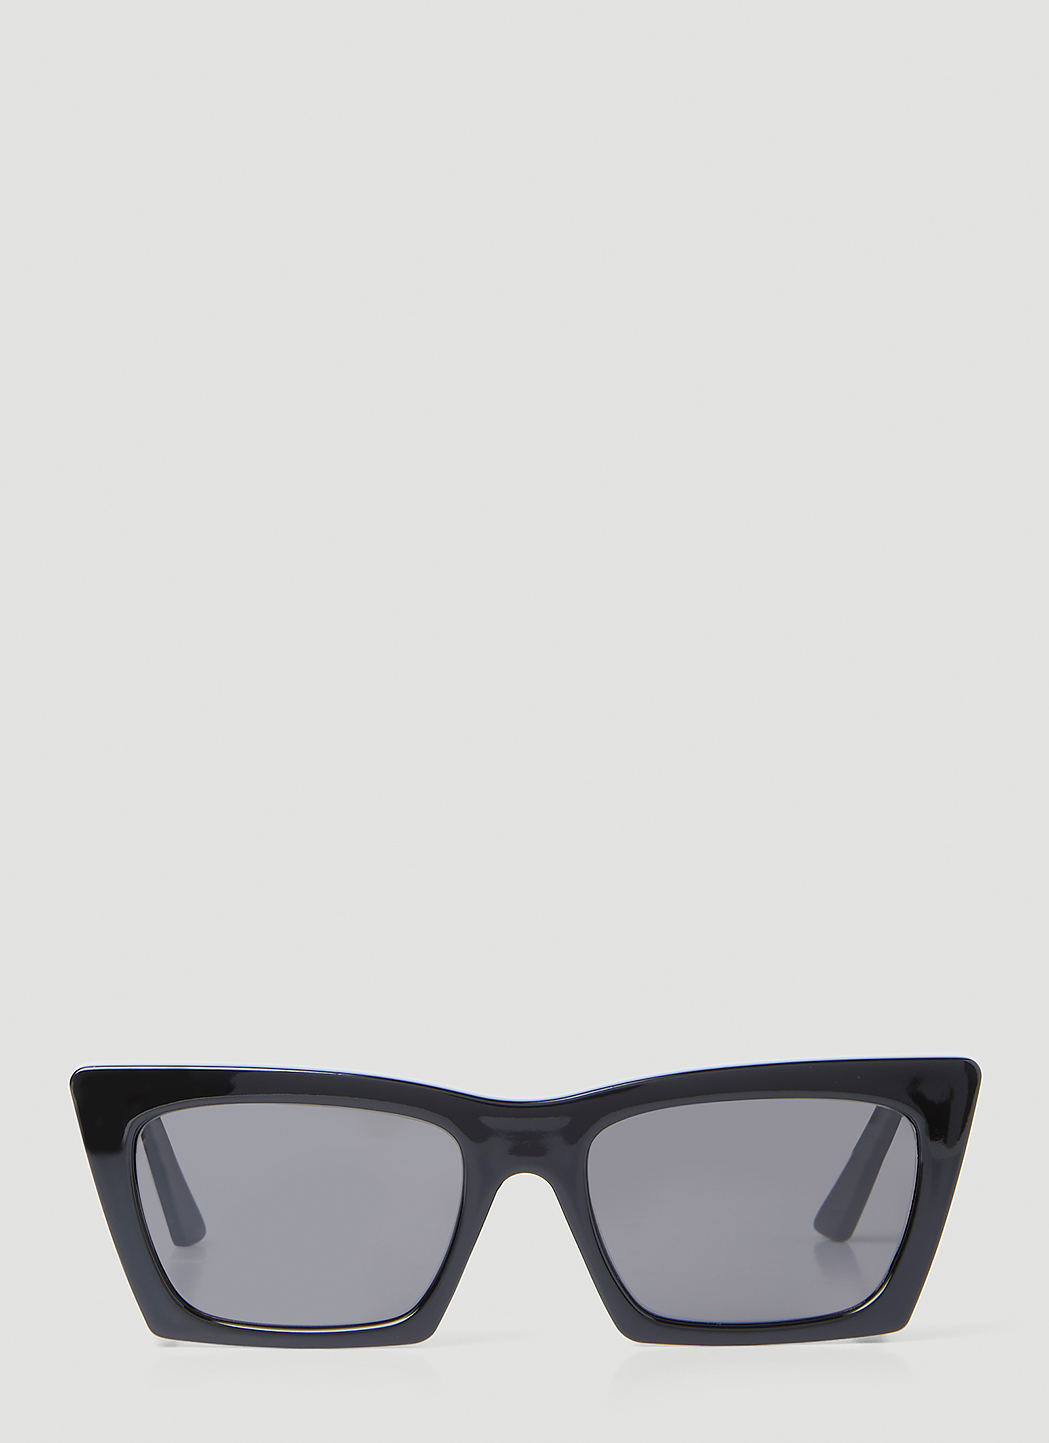 Type 4 Cat Eye Sunglasses